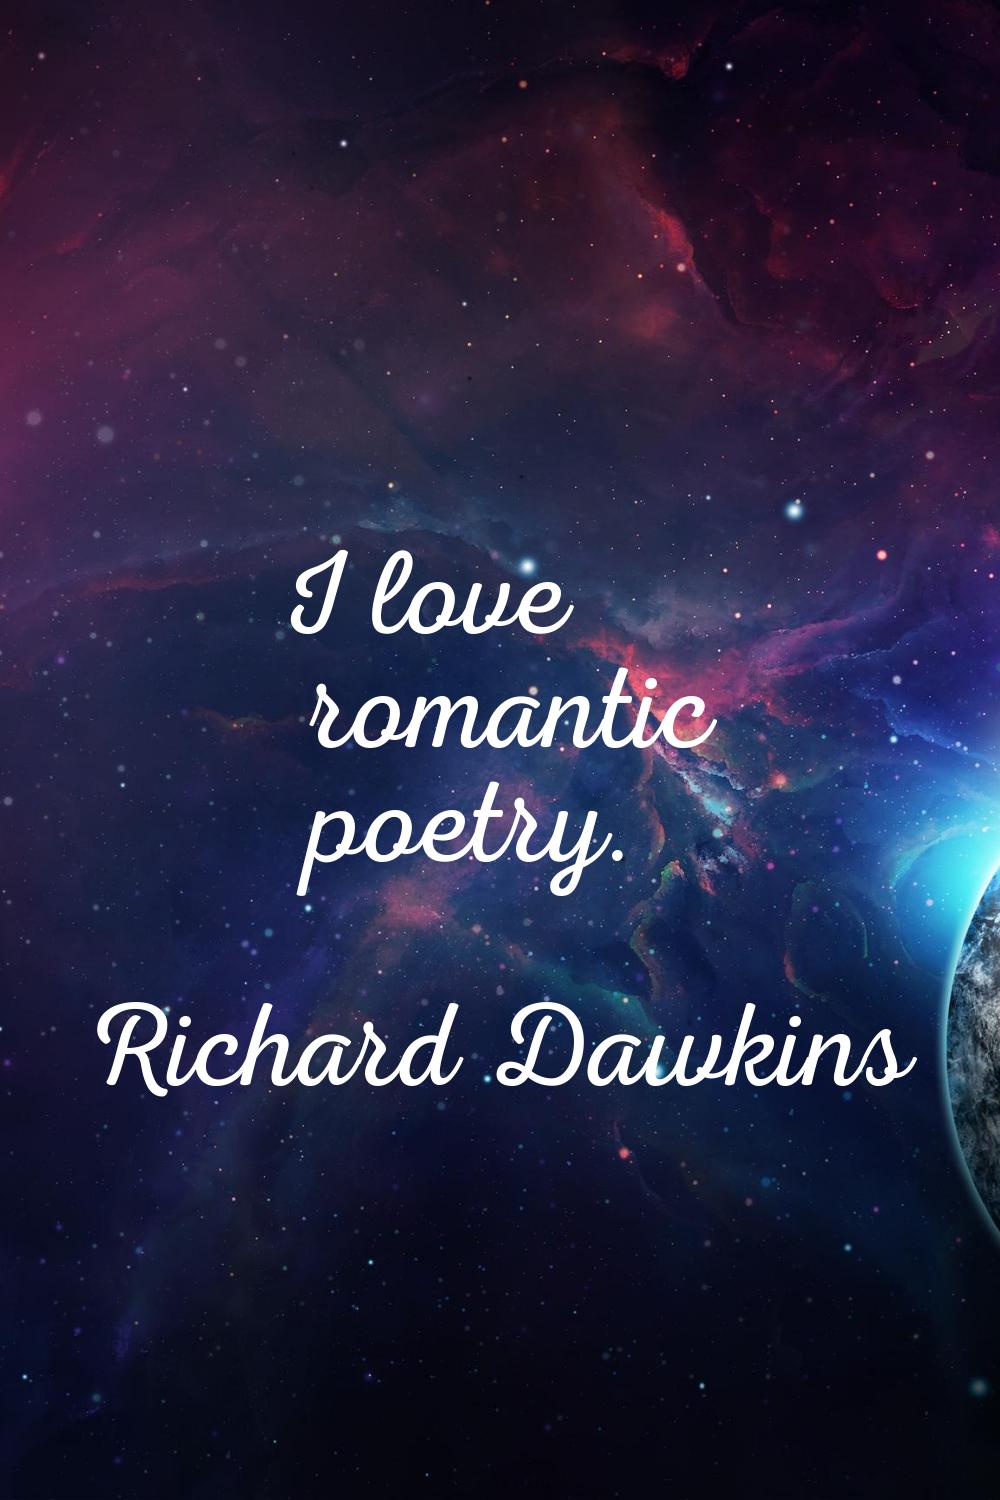 I love romantic poetry.